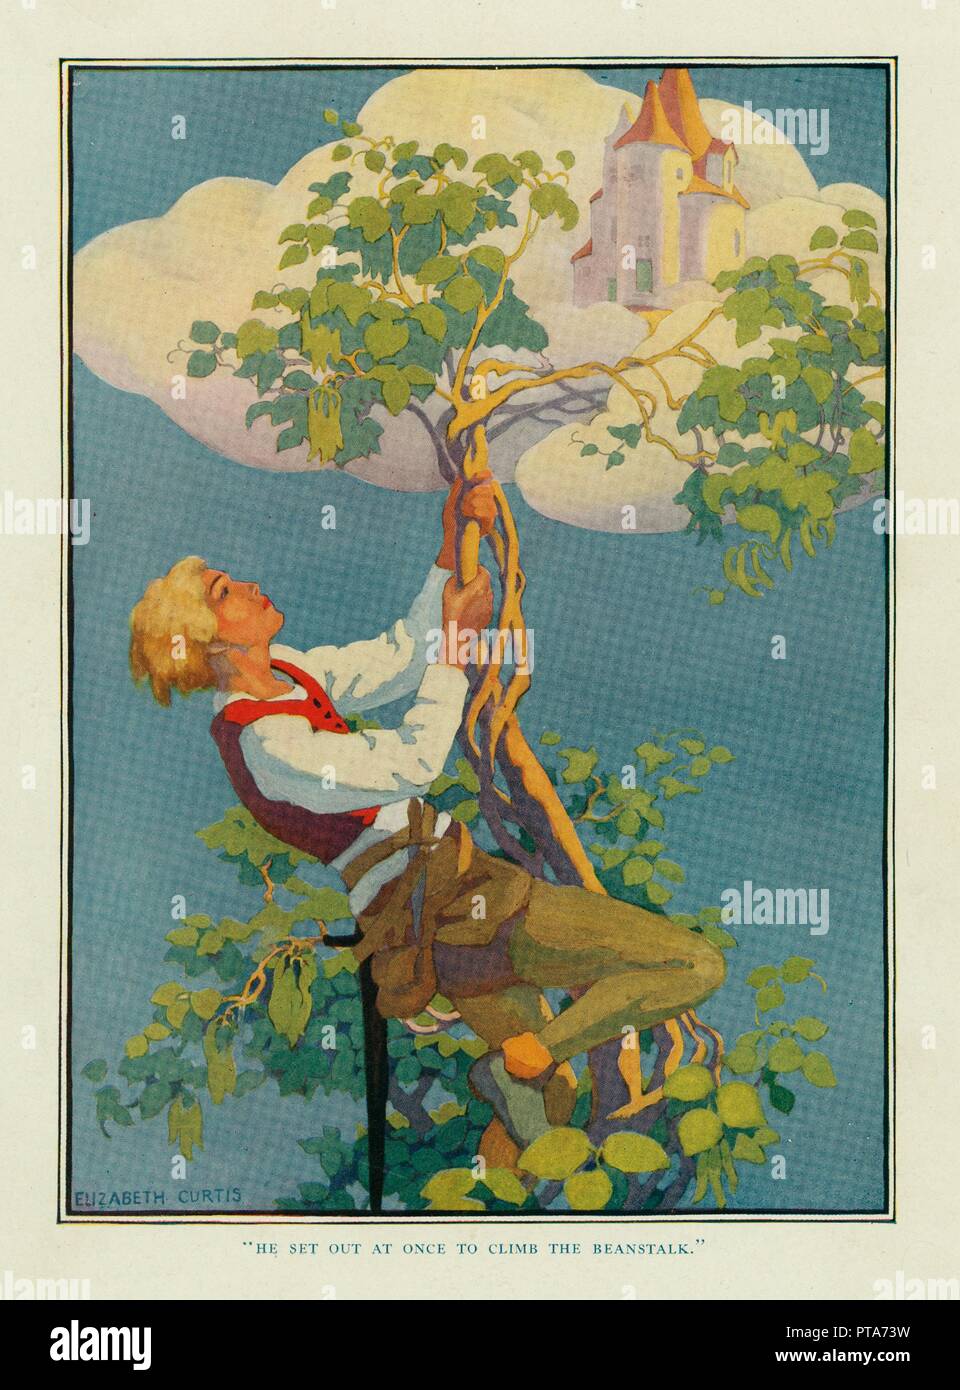 Il a exposé à la fois à grimper le haricot magique, de Stoke's Wonder Livre de contes de fées, pub. 1917. Organisateur : Elizabeth Curtis. Banque D'Images